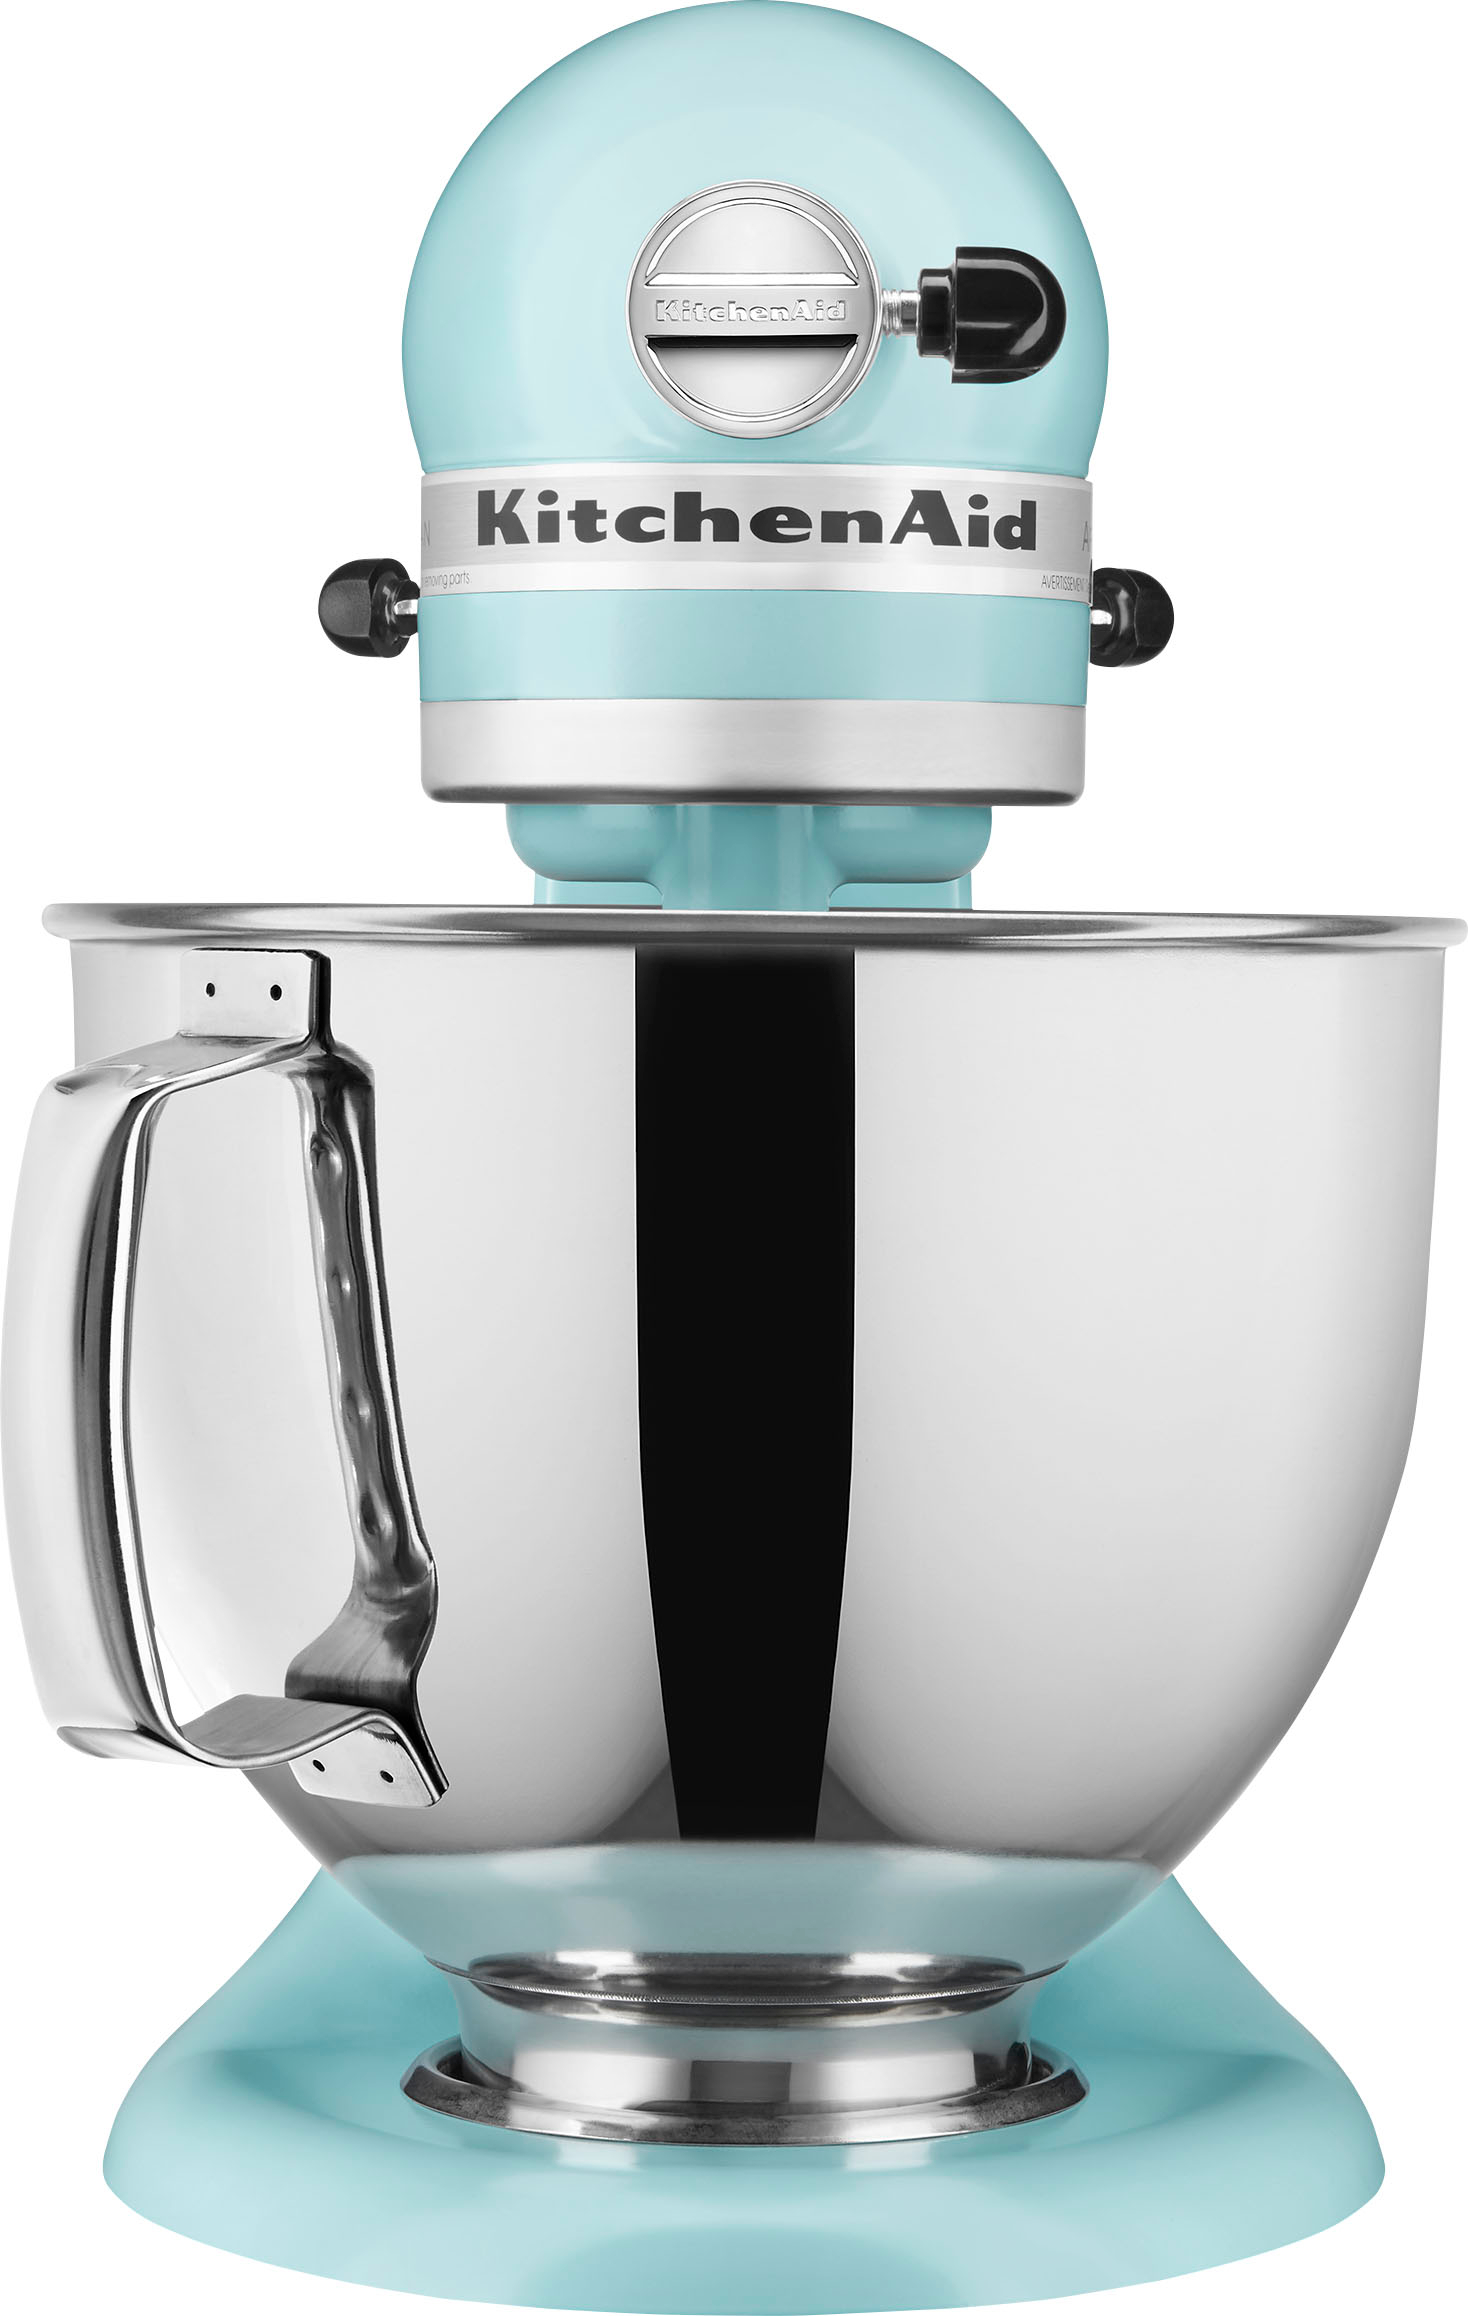 KitchenAid KSM150PSAQ Artisan Aqua Sky Teal 5-Quart Tilt-Head Stand Mixer +  Reviews